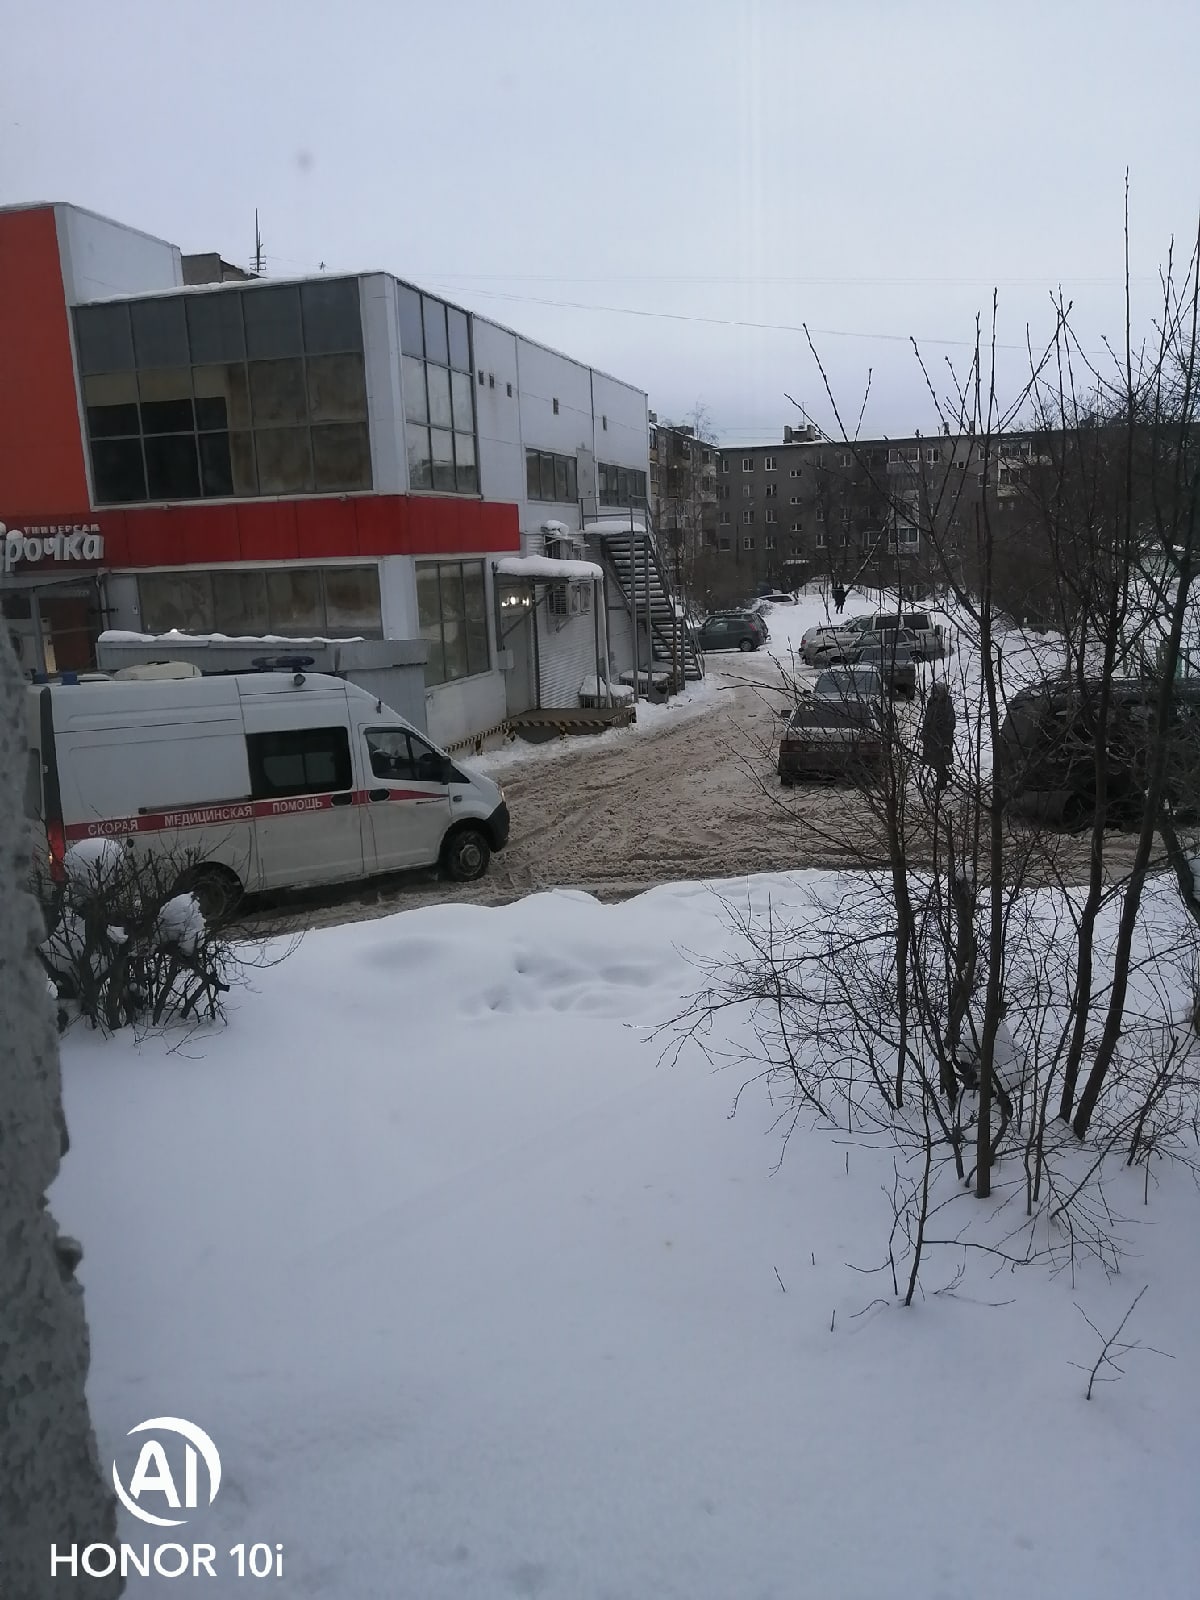 Скорая застряла в "снежной каше" в Петрозаводске